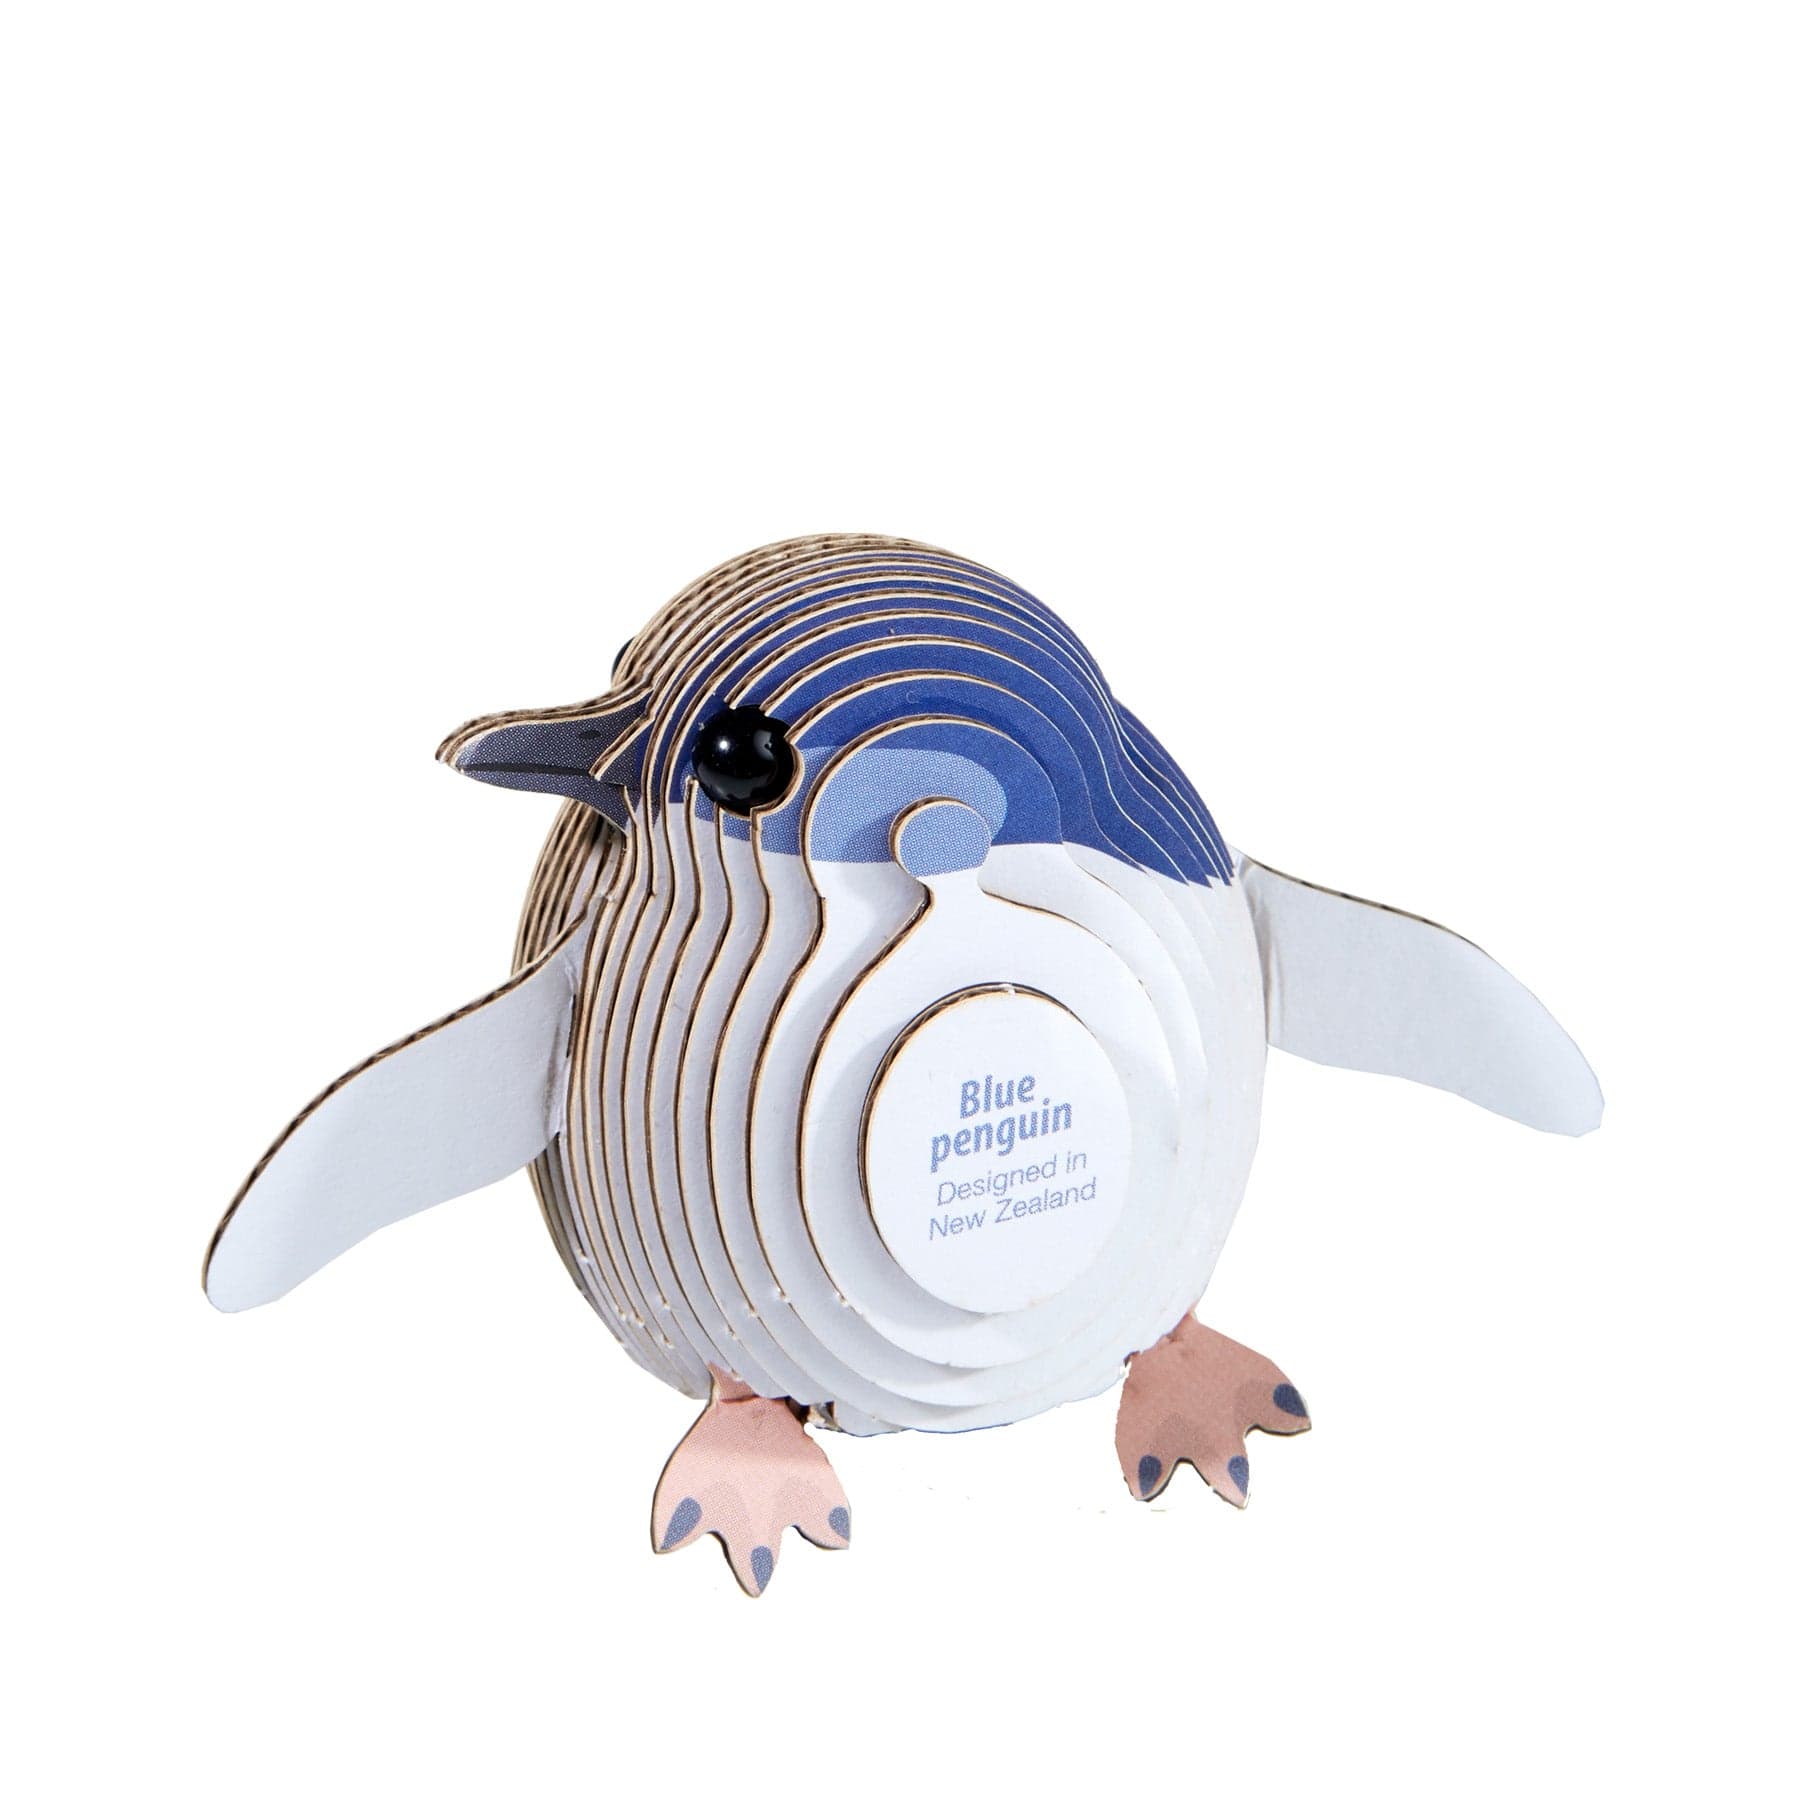 Penguin 3D model kit